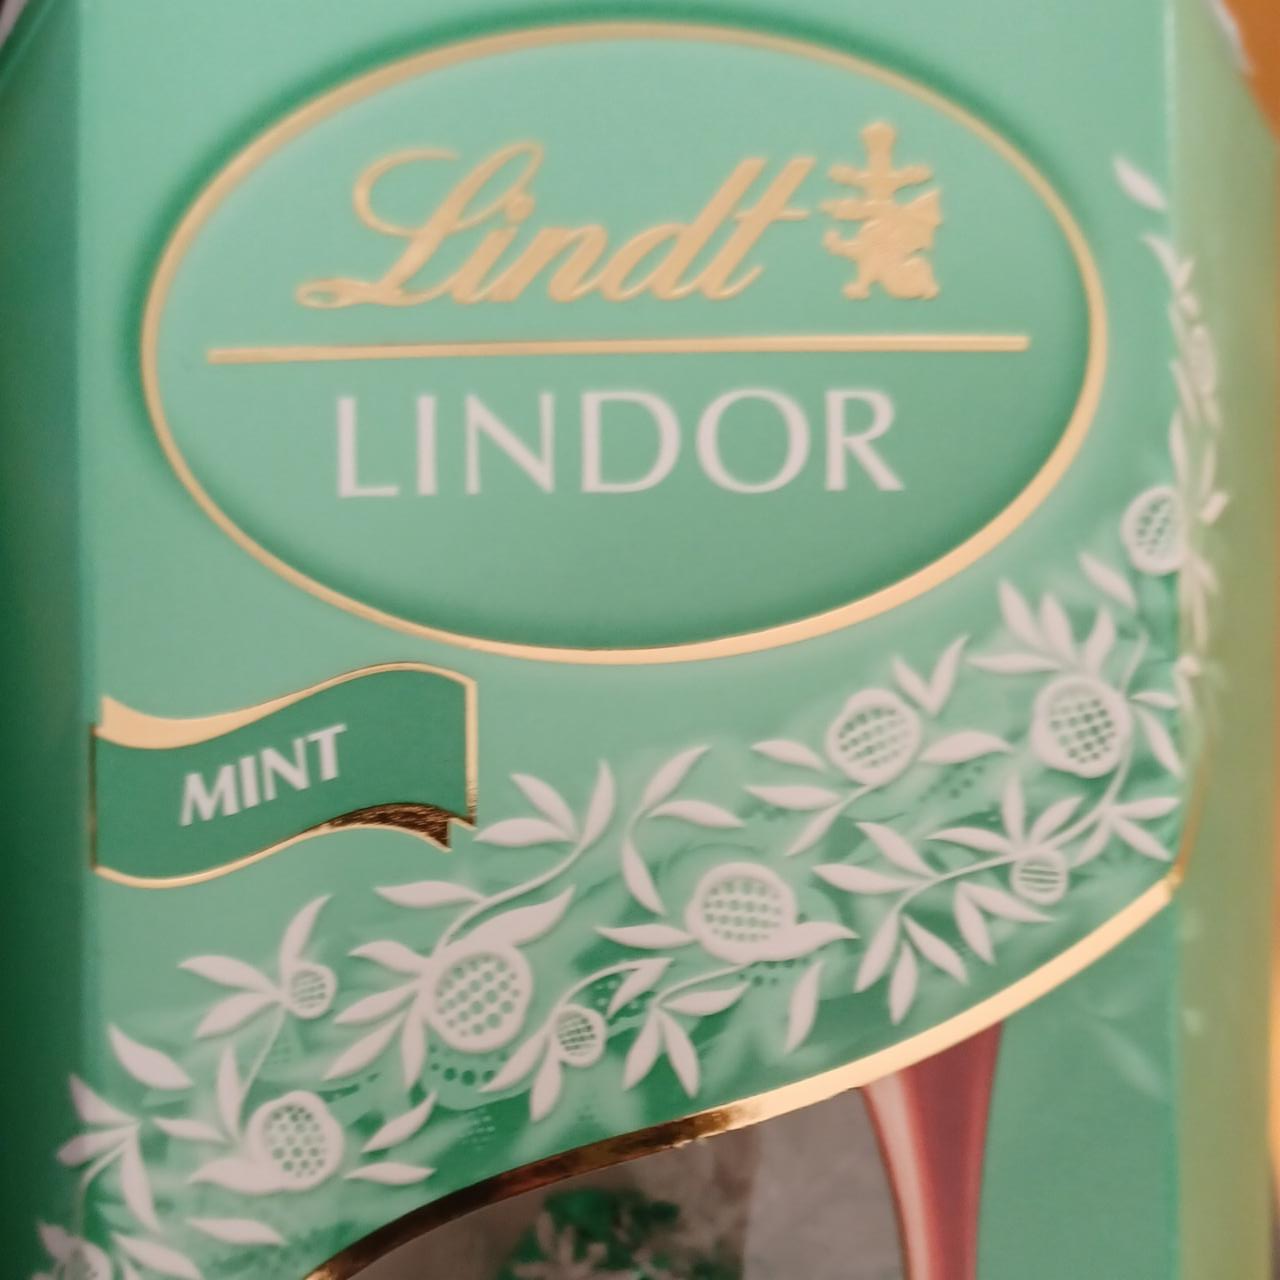 Fotografie - Lindor Milk Mint Lindt